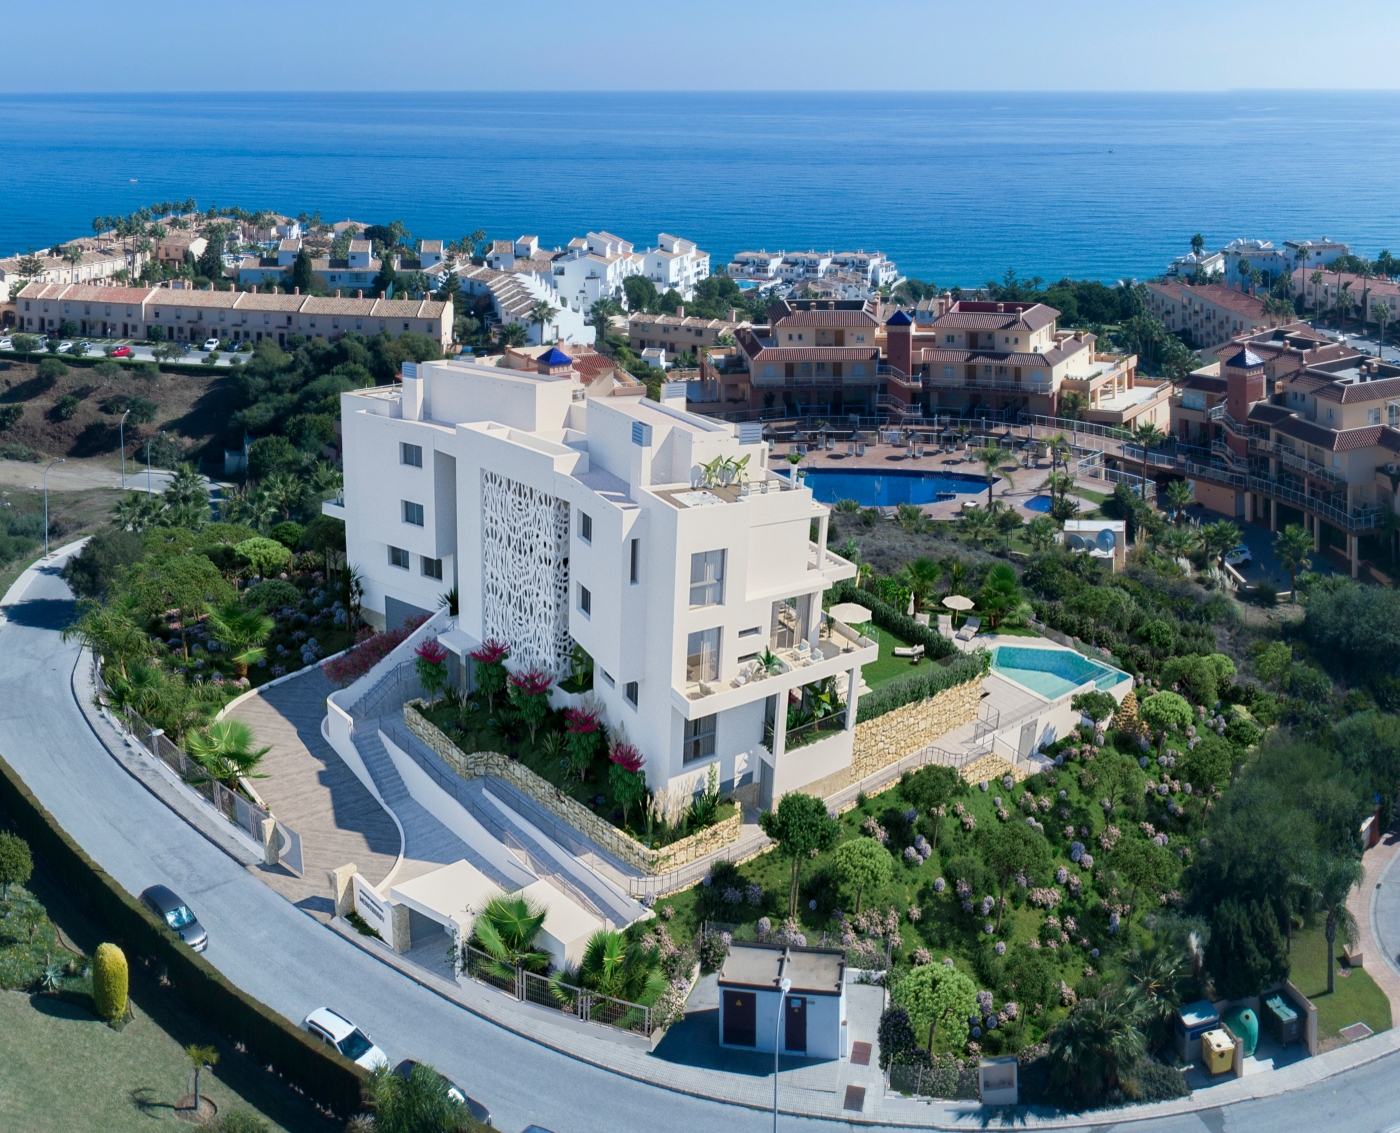 Esclusivi appartamenti di lusso a Mijas Costa con vista sul mare, con terrazza, piscina condominiale e parcheggio